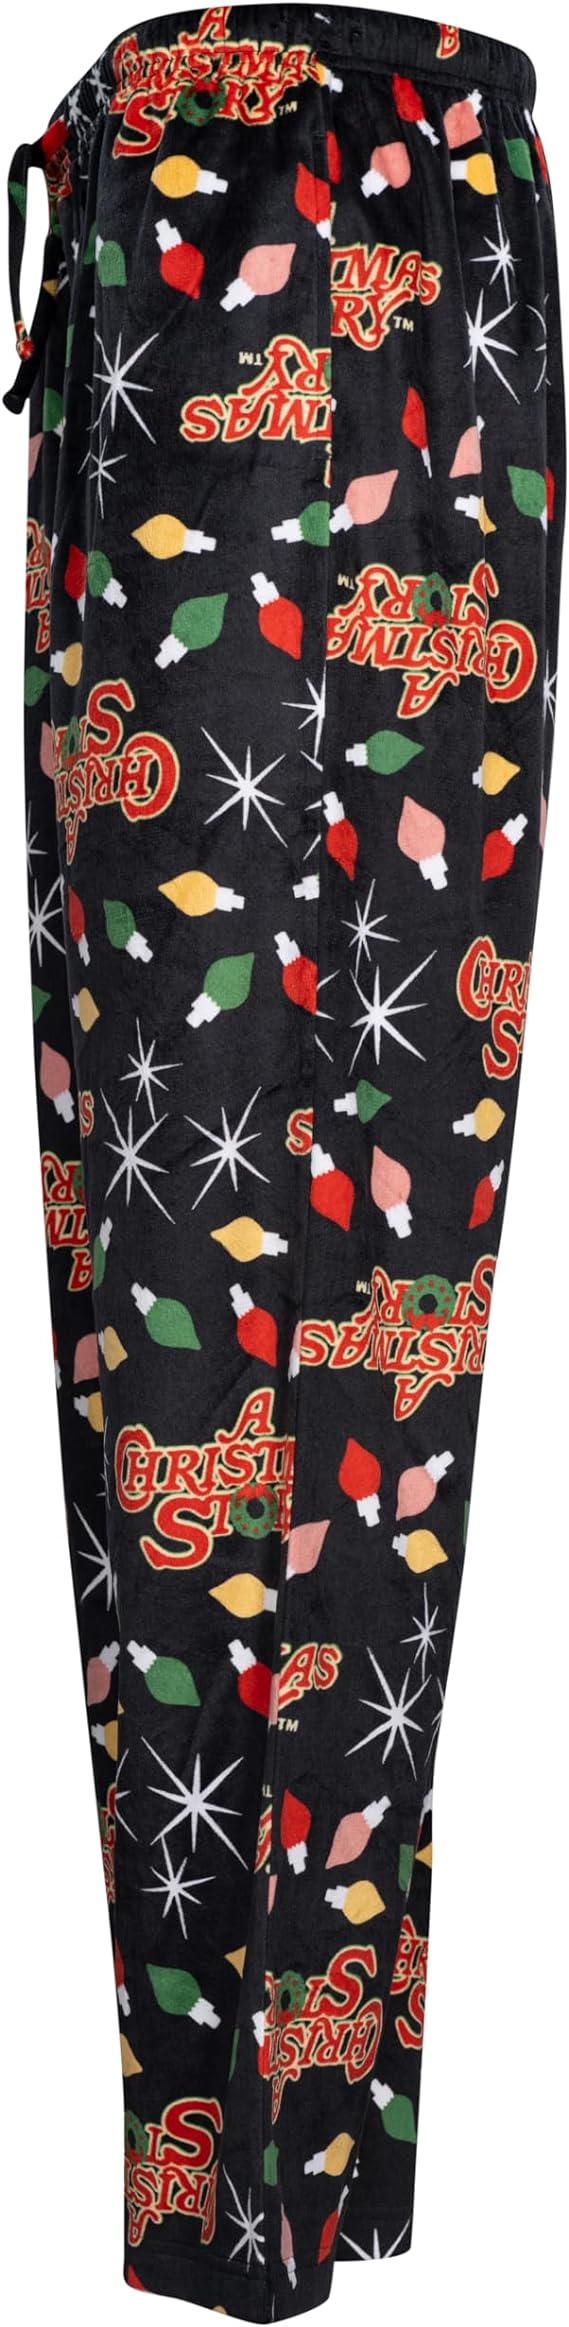 A CHRISTMAS STORY Brushed Fleece Holiday Lights Pj Lounge Pants Pajama